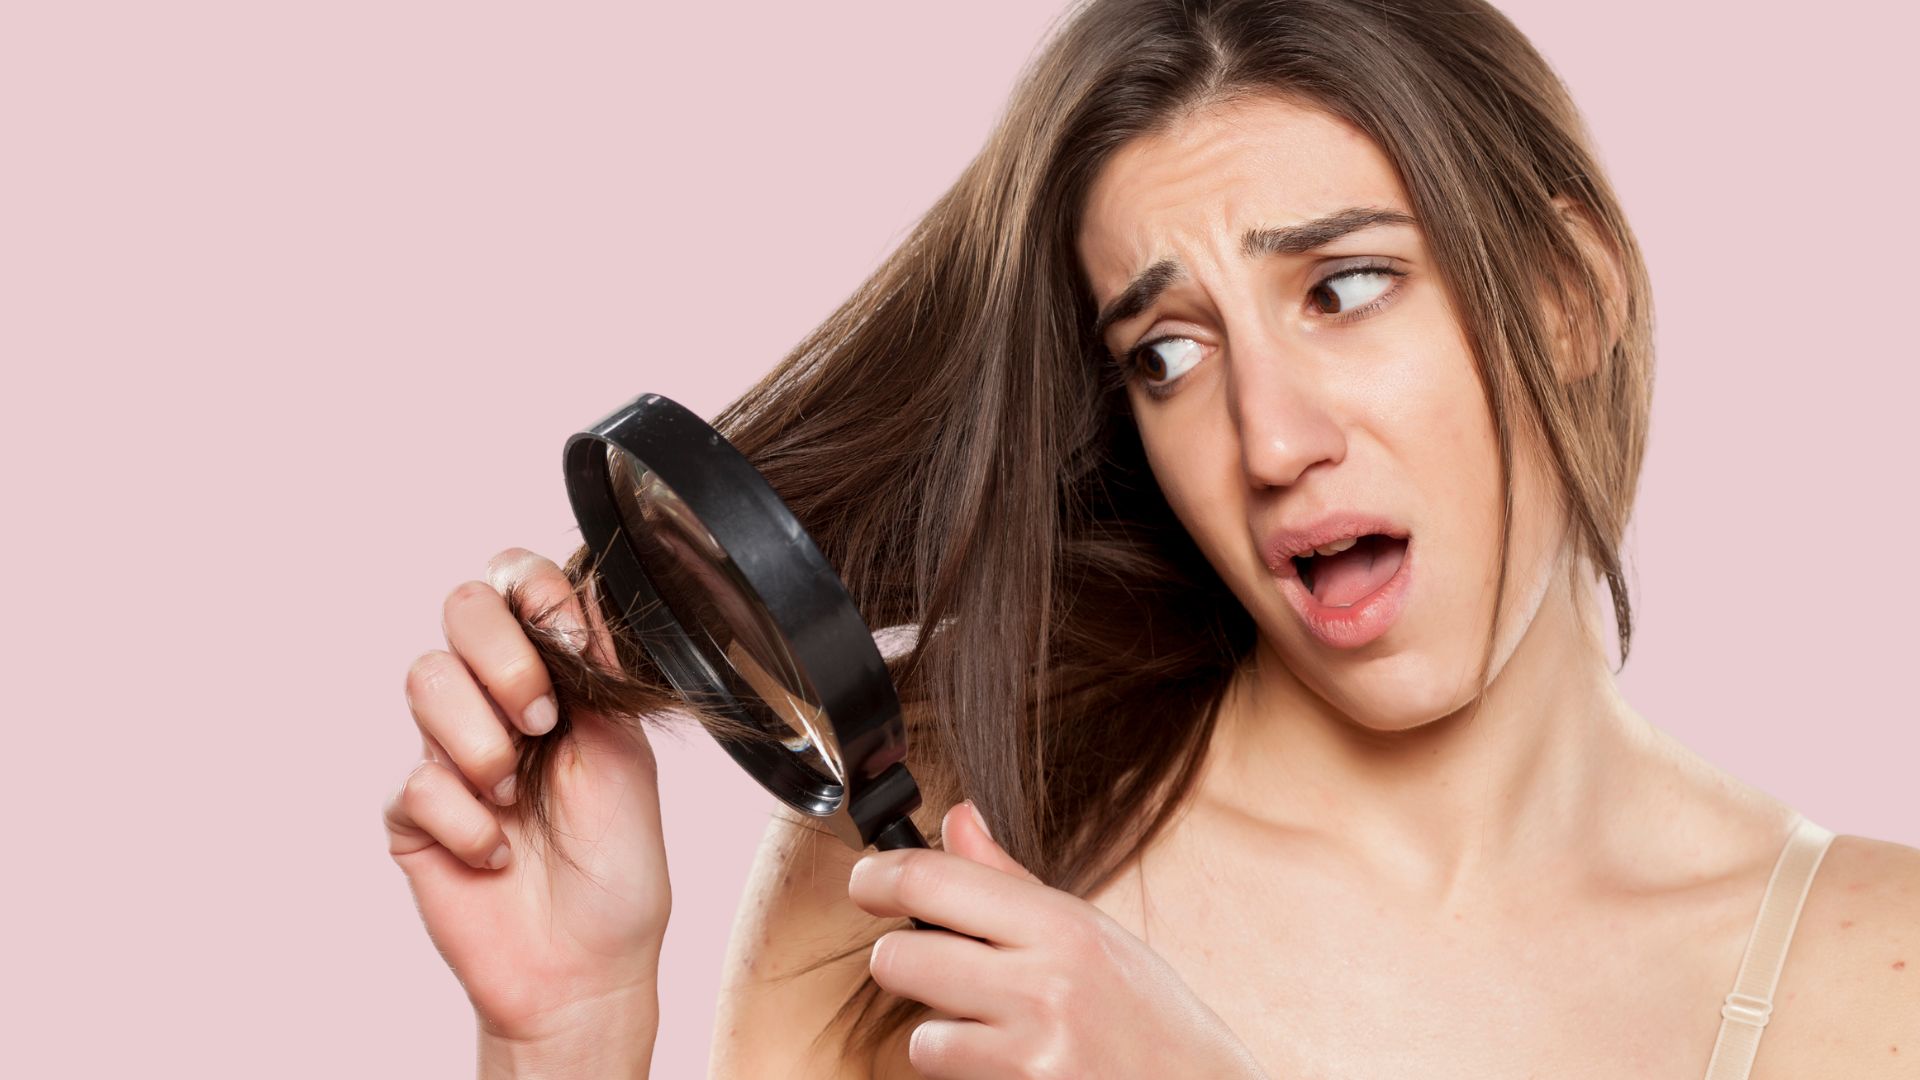 Productos para el cuidado del cabello que debes evitar